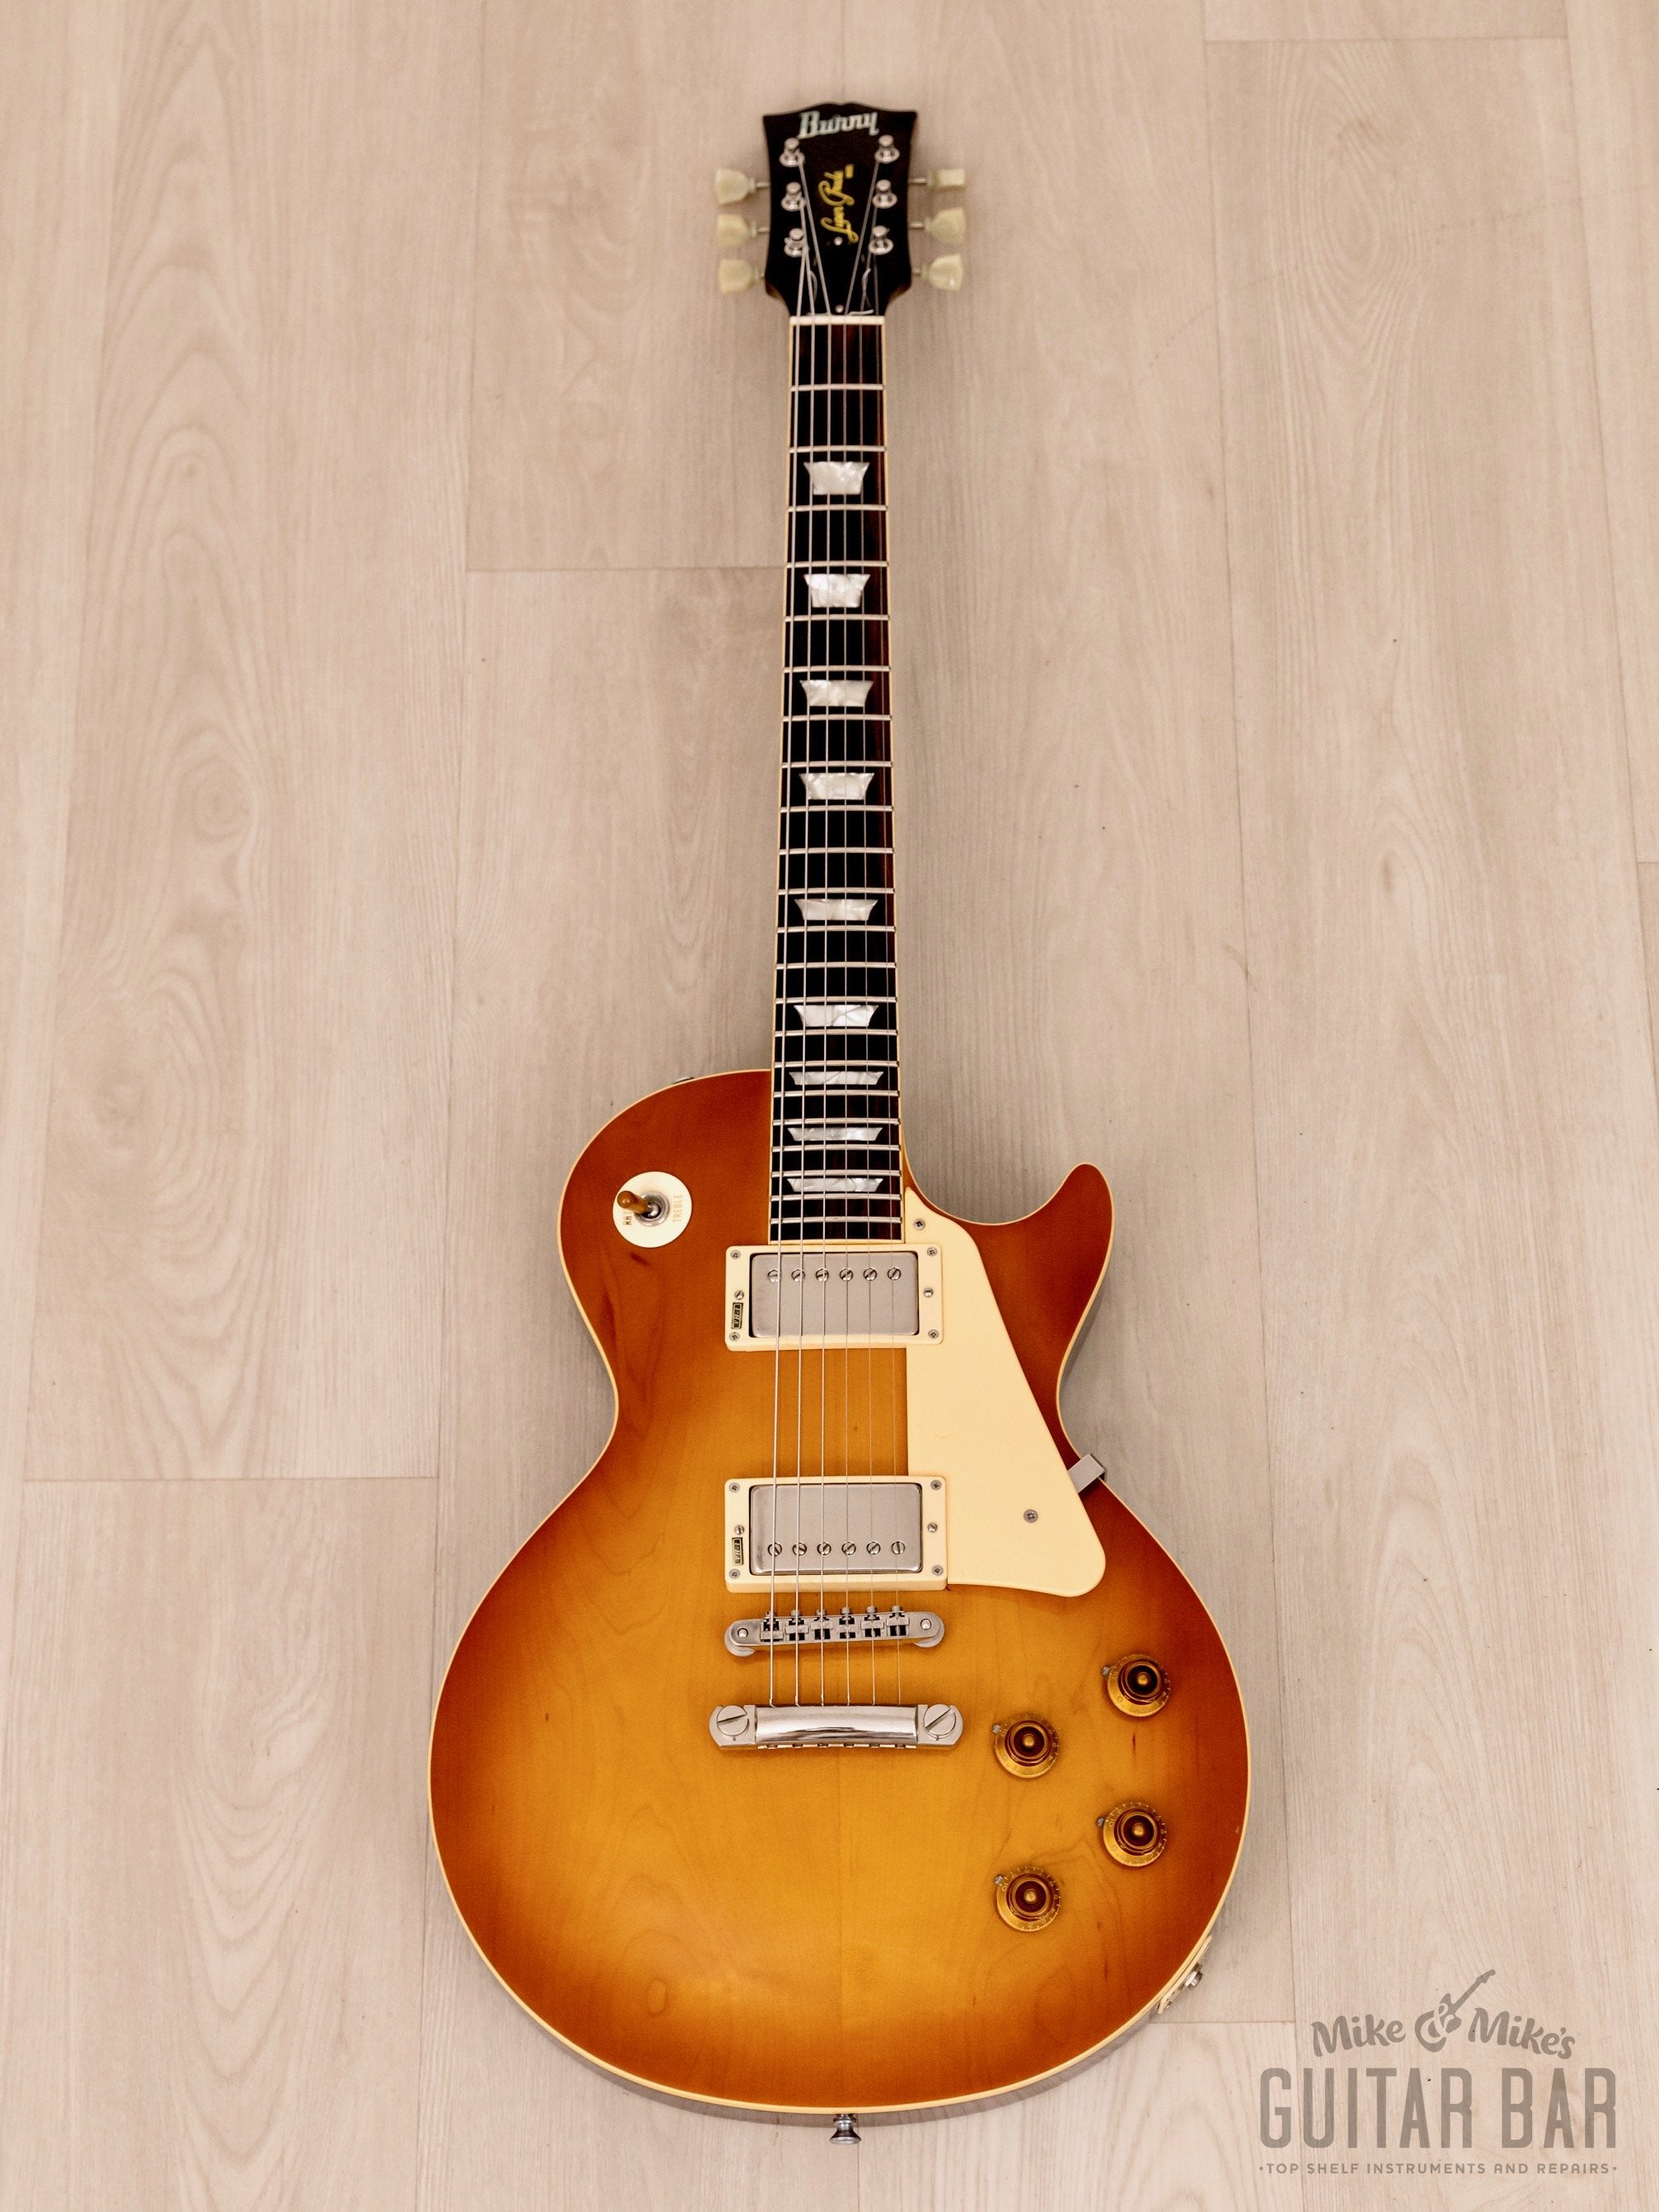 1991 Burny Super Grade RLG-60 “‘59 Model” Vintage Guitar Cherry Sunburst w/ VH-1 Pickups, Japan